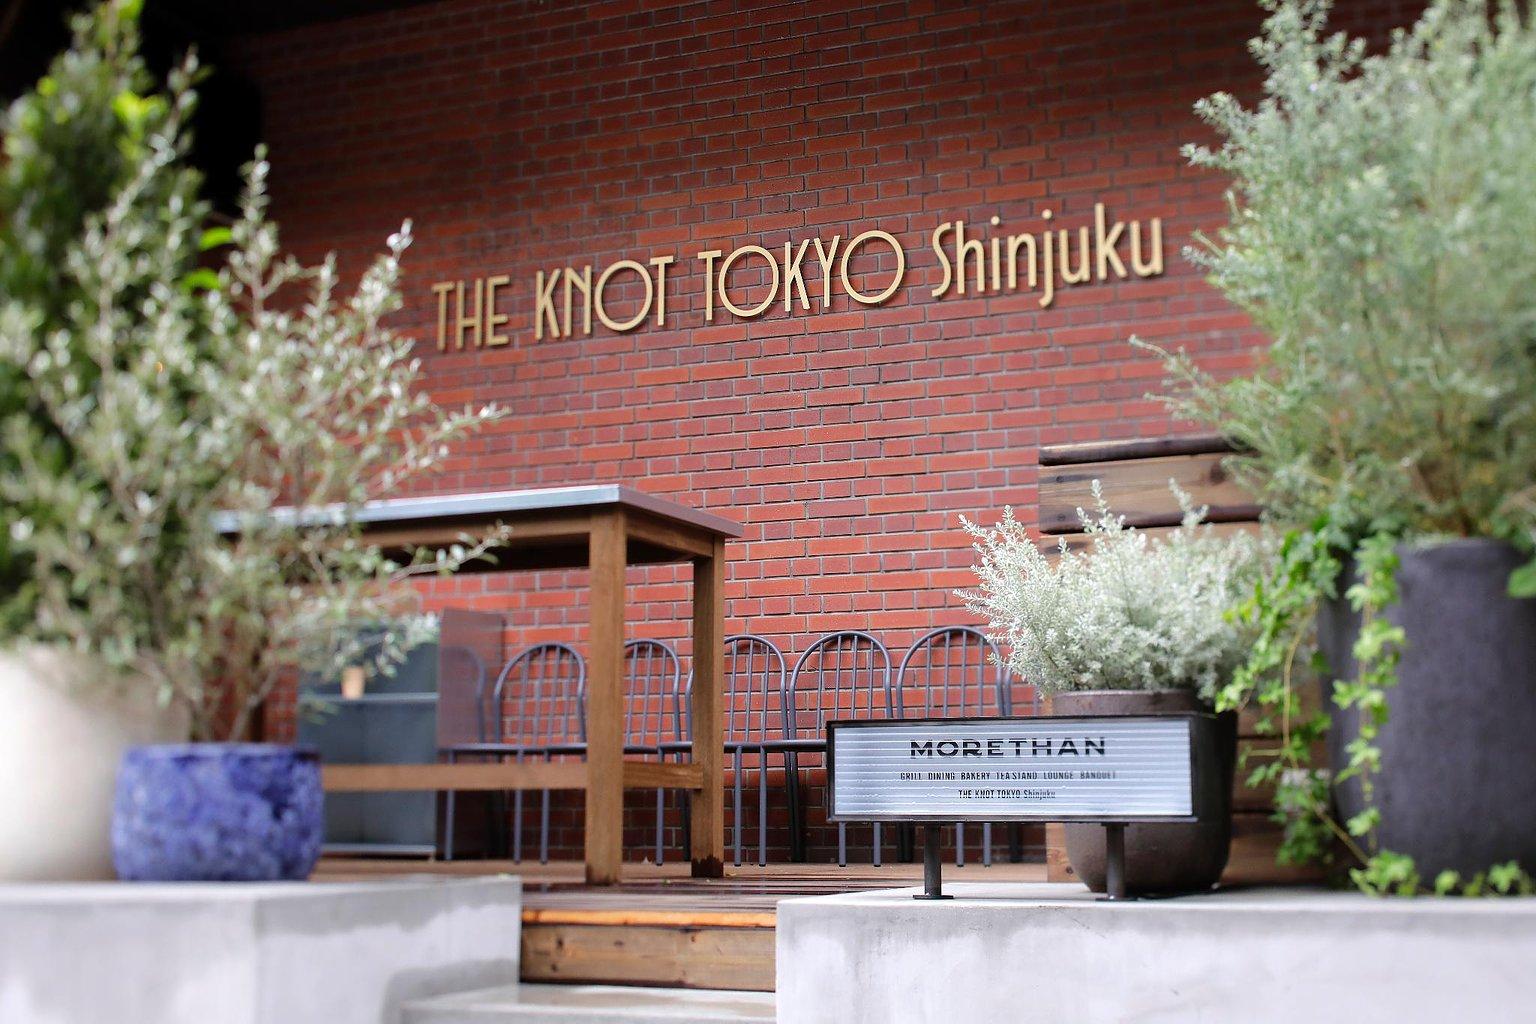 THE KNOT TOKYO 신주쿠 / THE KNOT TOKYO Shinjuku